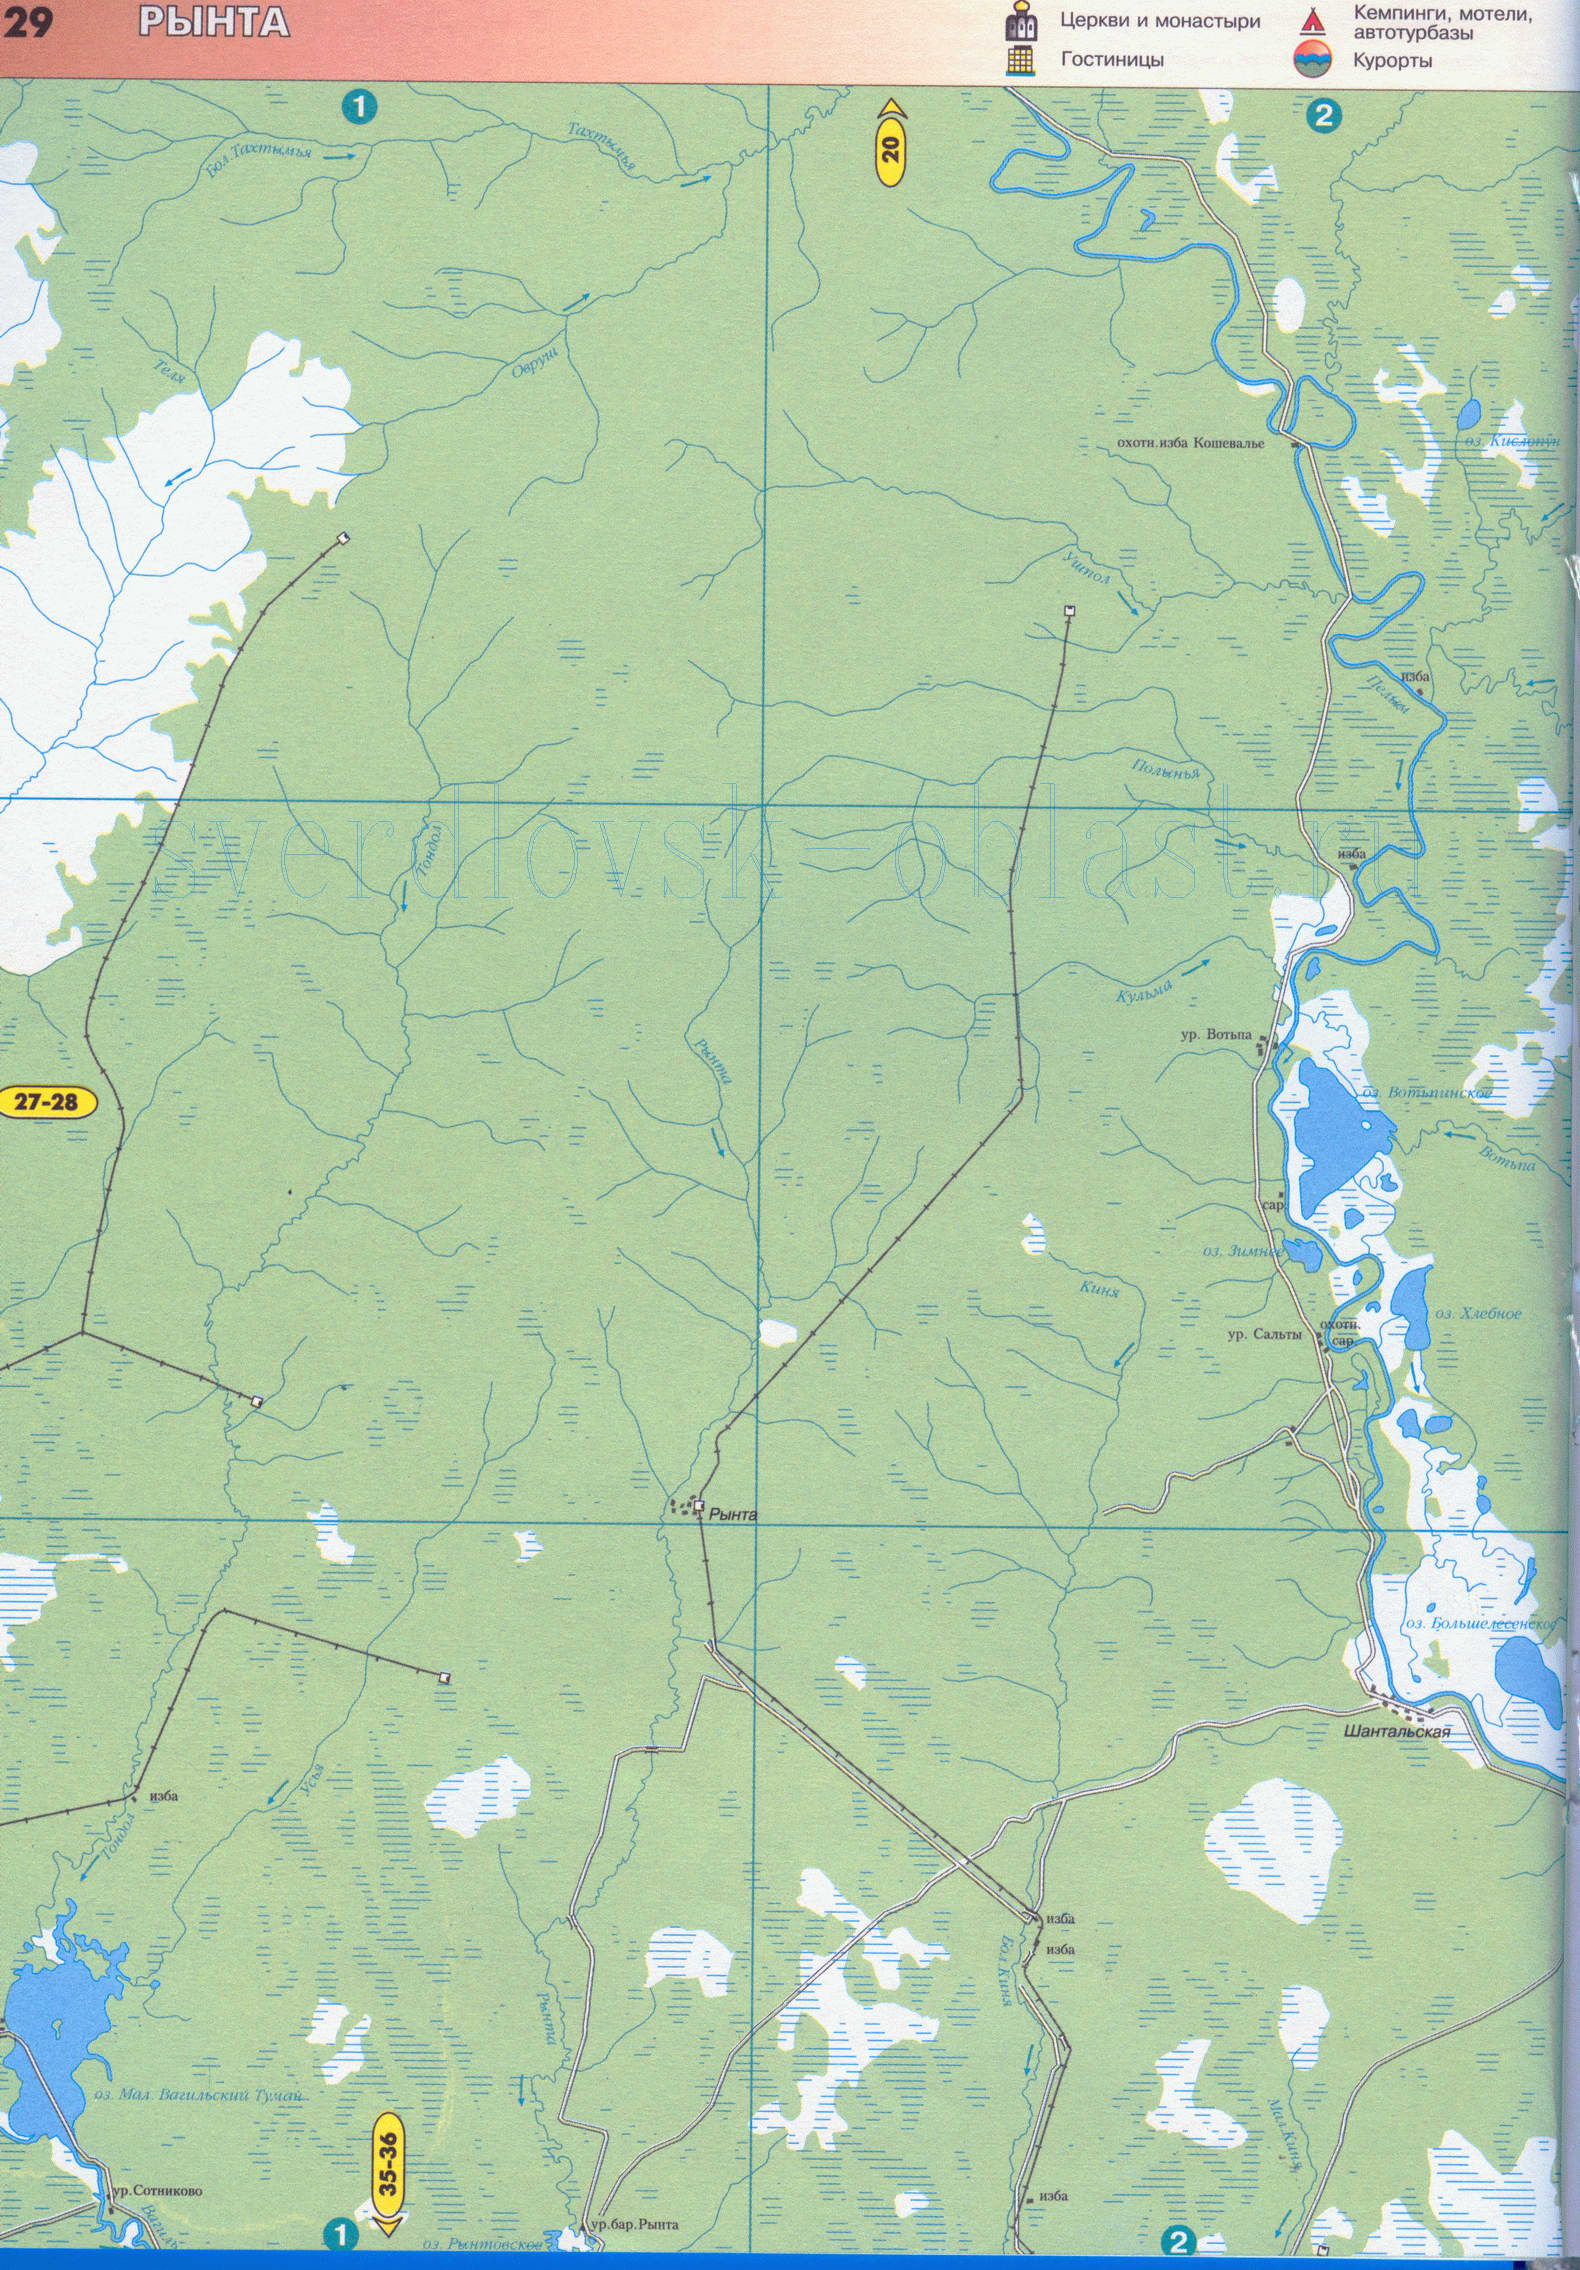 Карта окрестностей города Североуральск Свердловской области (г Североуральск 33 тысячи жителей), E0 - 